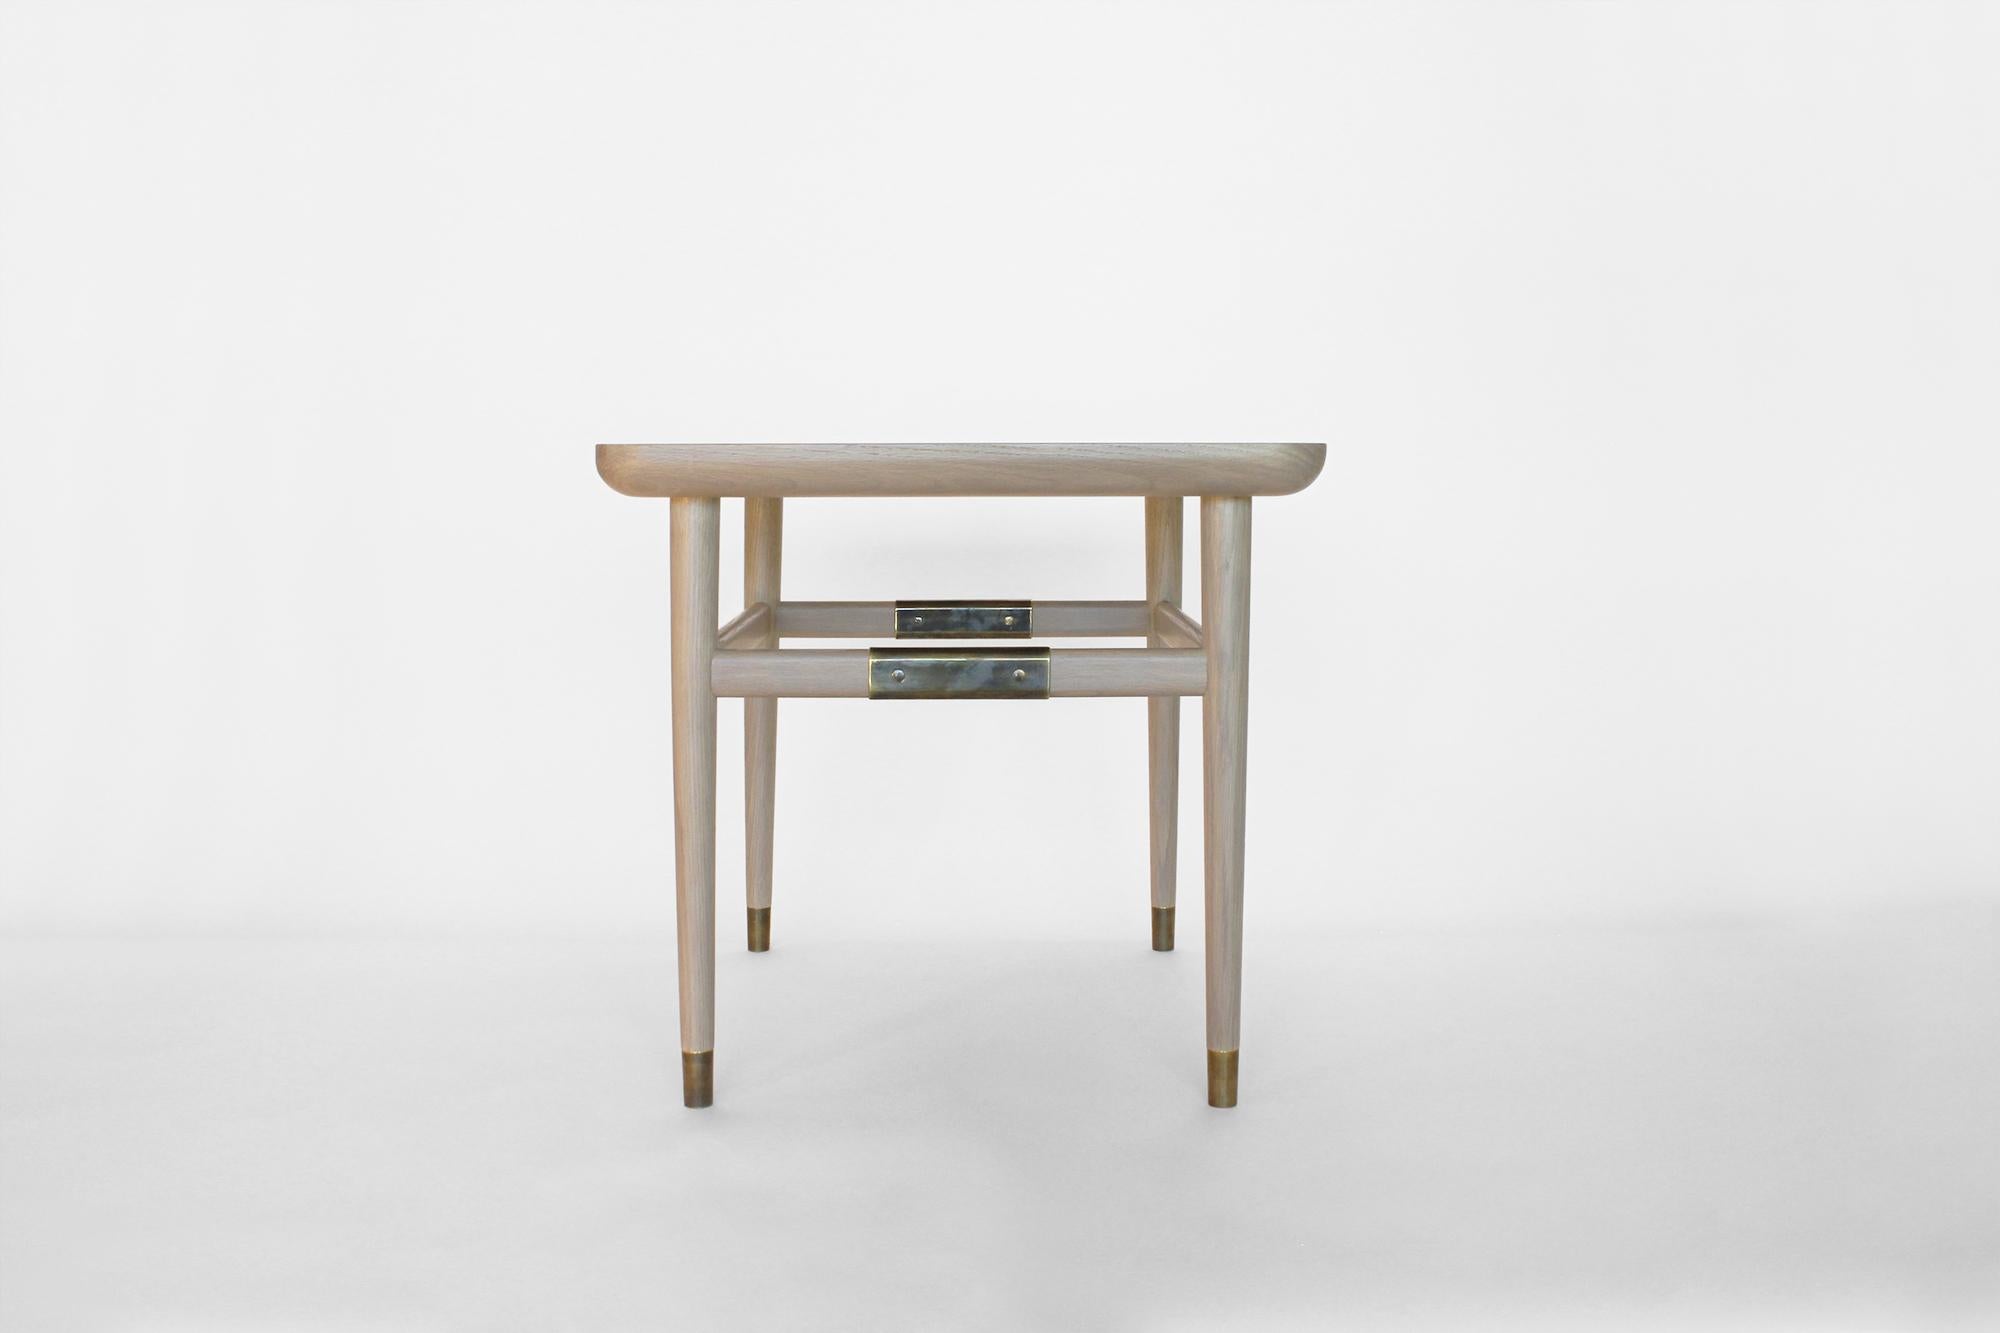 La table d'appoint Oslo possède une pureté simple et durable. Avec des plateaux rectangulaires, des bords arrondis et des touches de laiton, tous sont doux au toucher et agréables à regarder. À l'aise dans un cadre formel ou informel, il est le